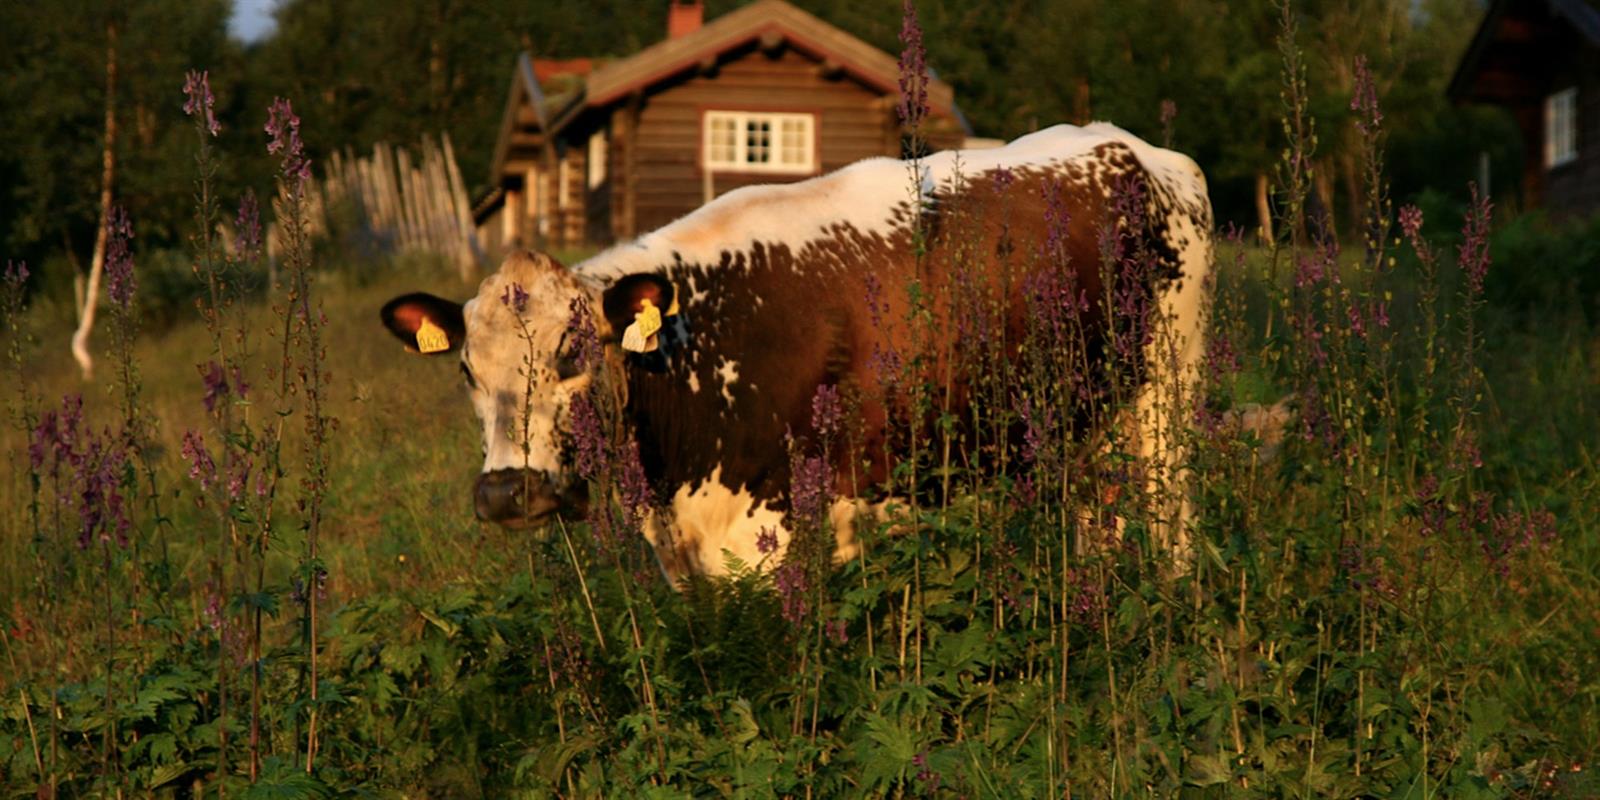 The Summer Mouintan Farm Village of Snåsa